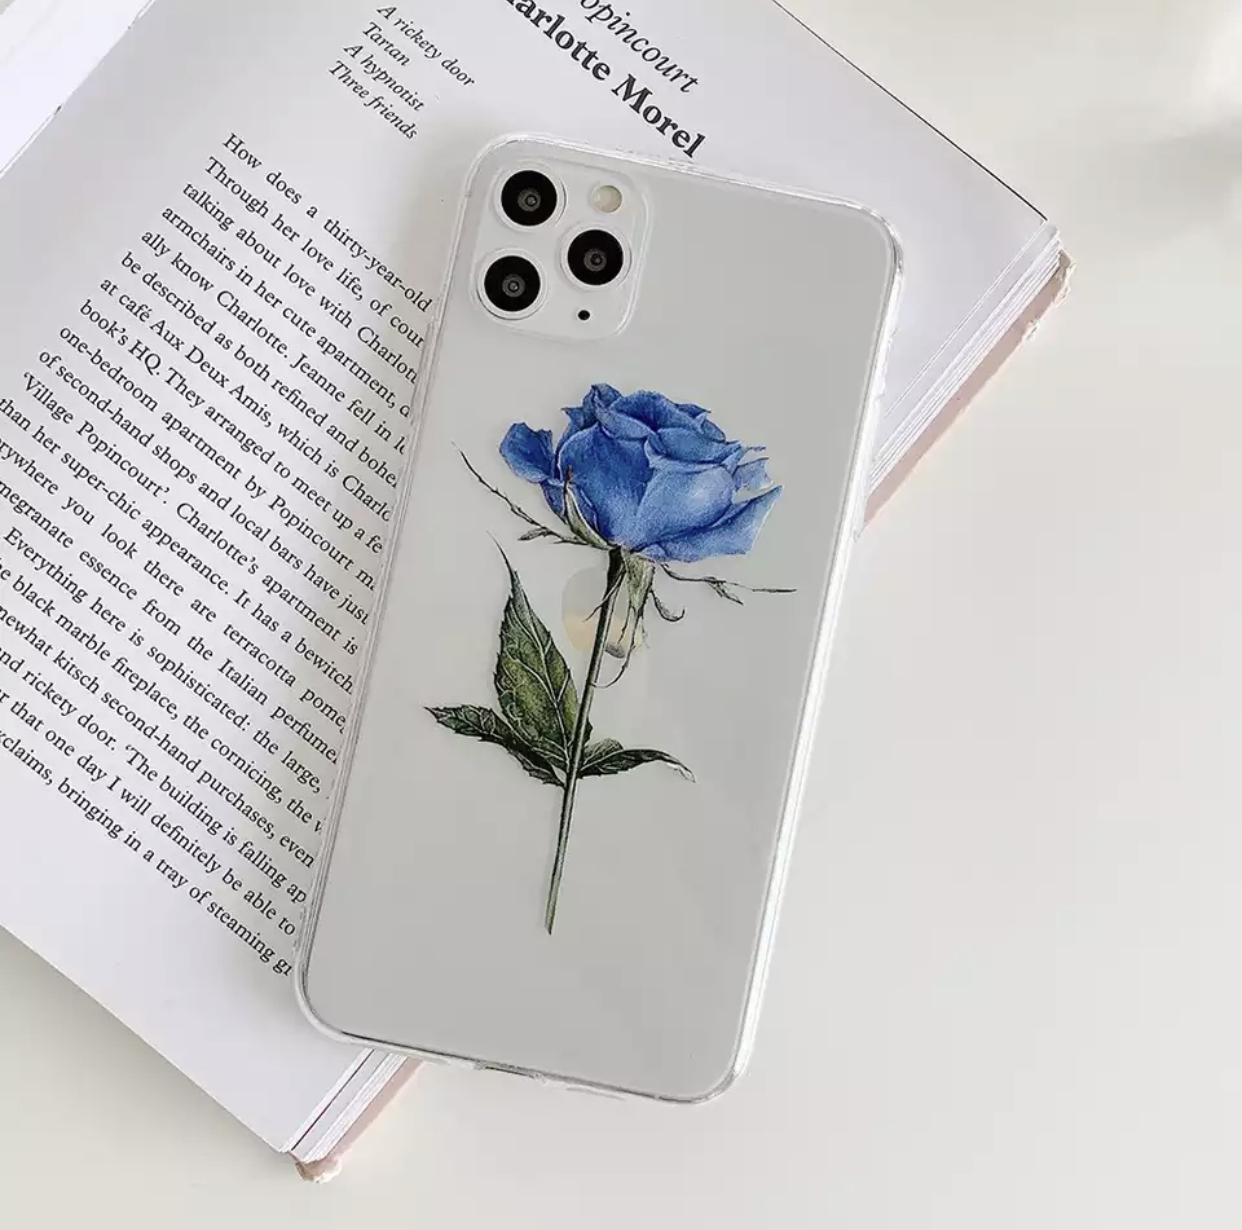 送料無料 2カラー Iphone ケース カバー 薔薇 バラ ばら クリア スマホケースおしゃれ 最新 La Preference